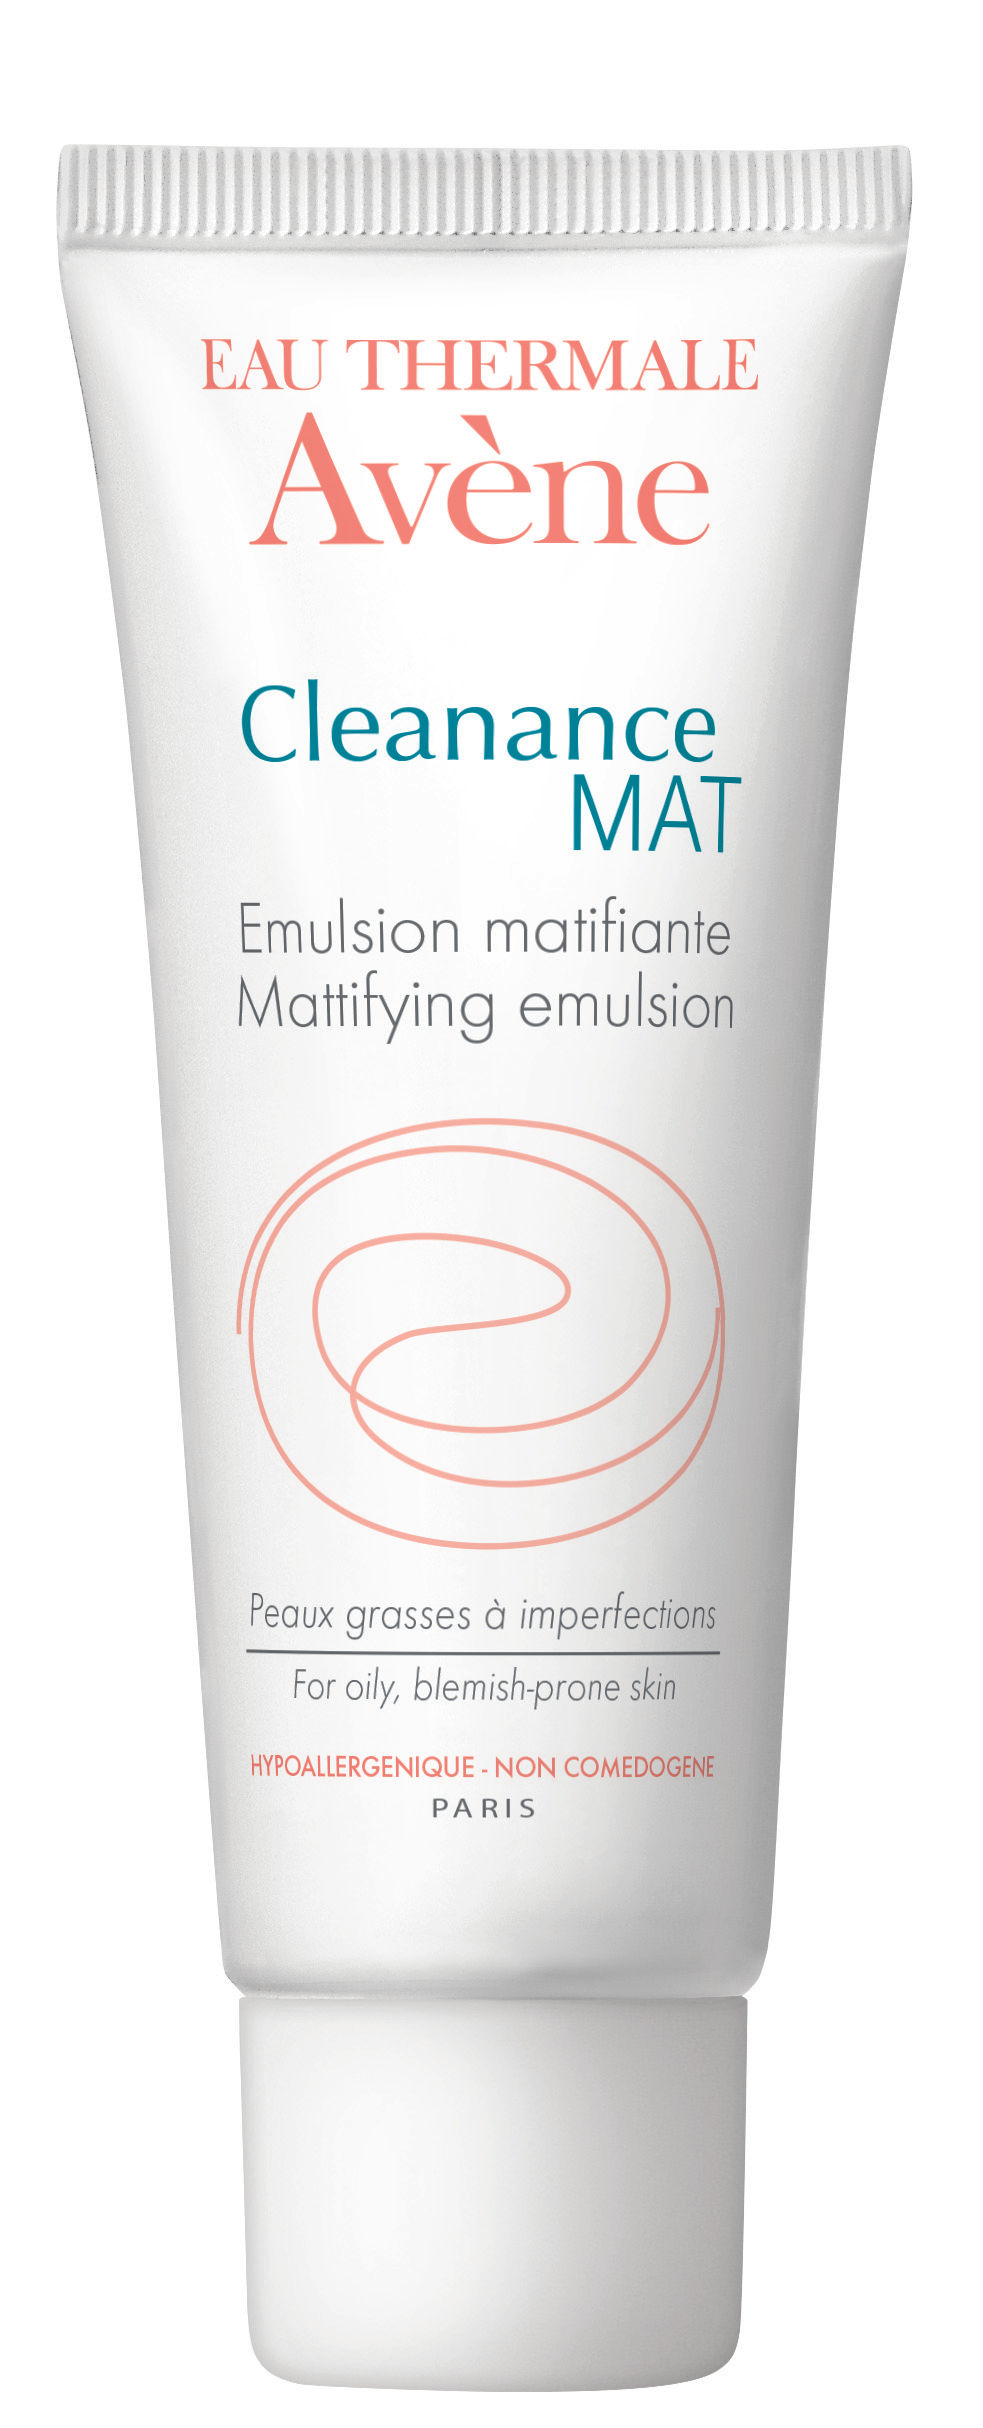 Avene Cleanance Mat Mattifying Emulsion